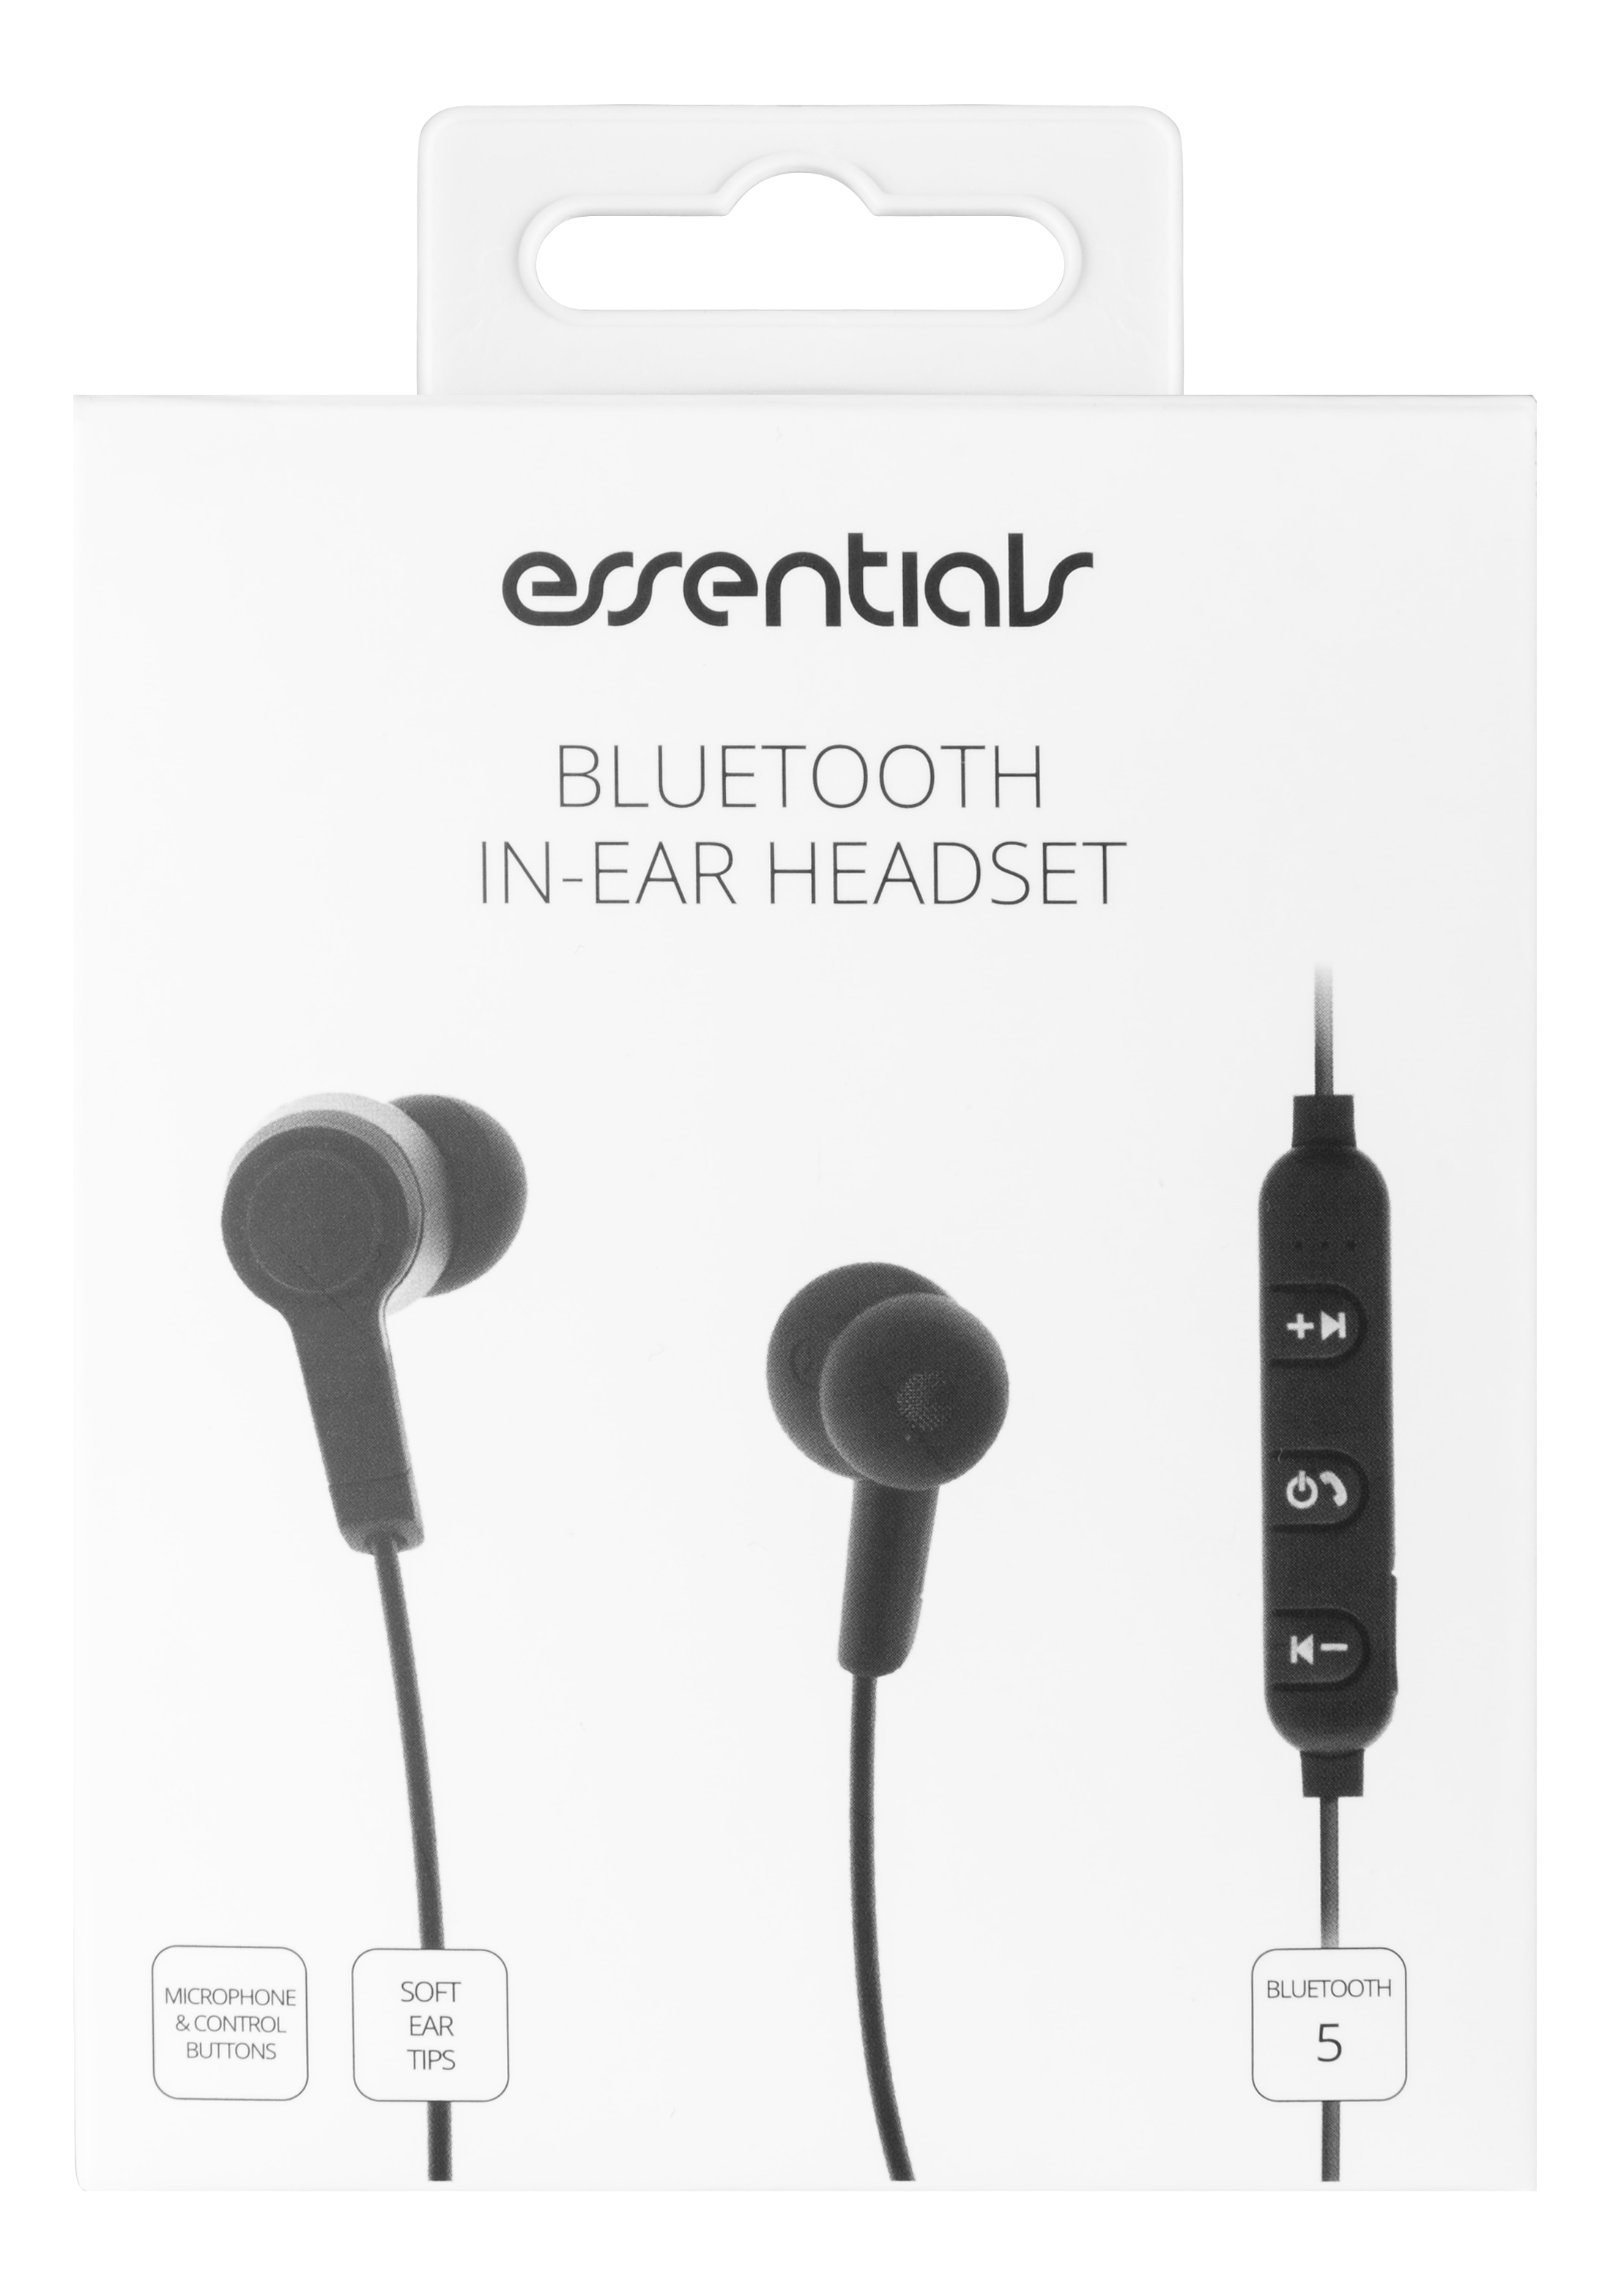 In-ear Bluetooth headset Black